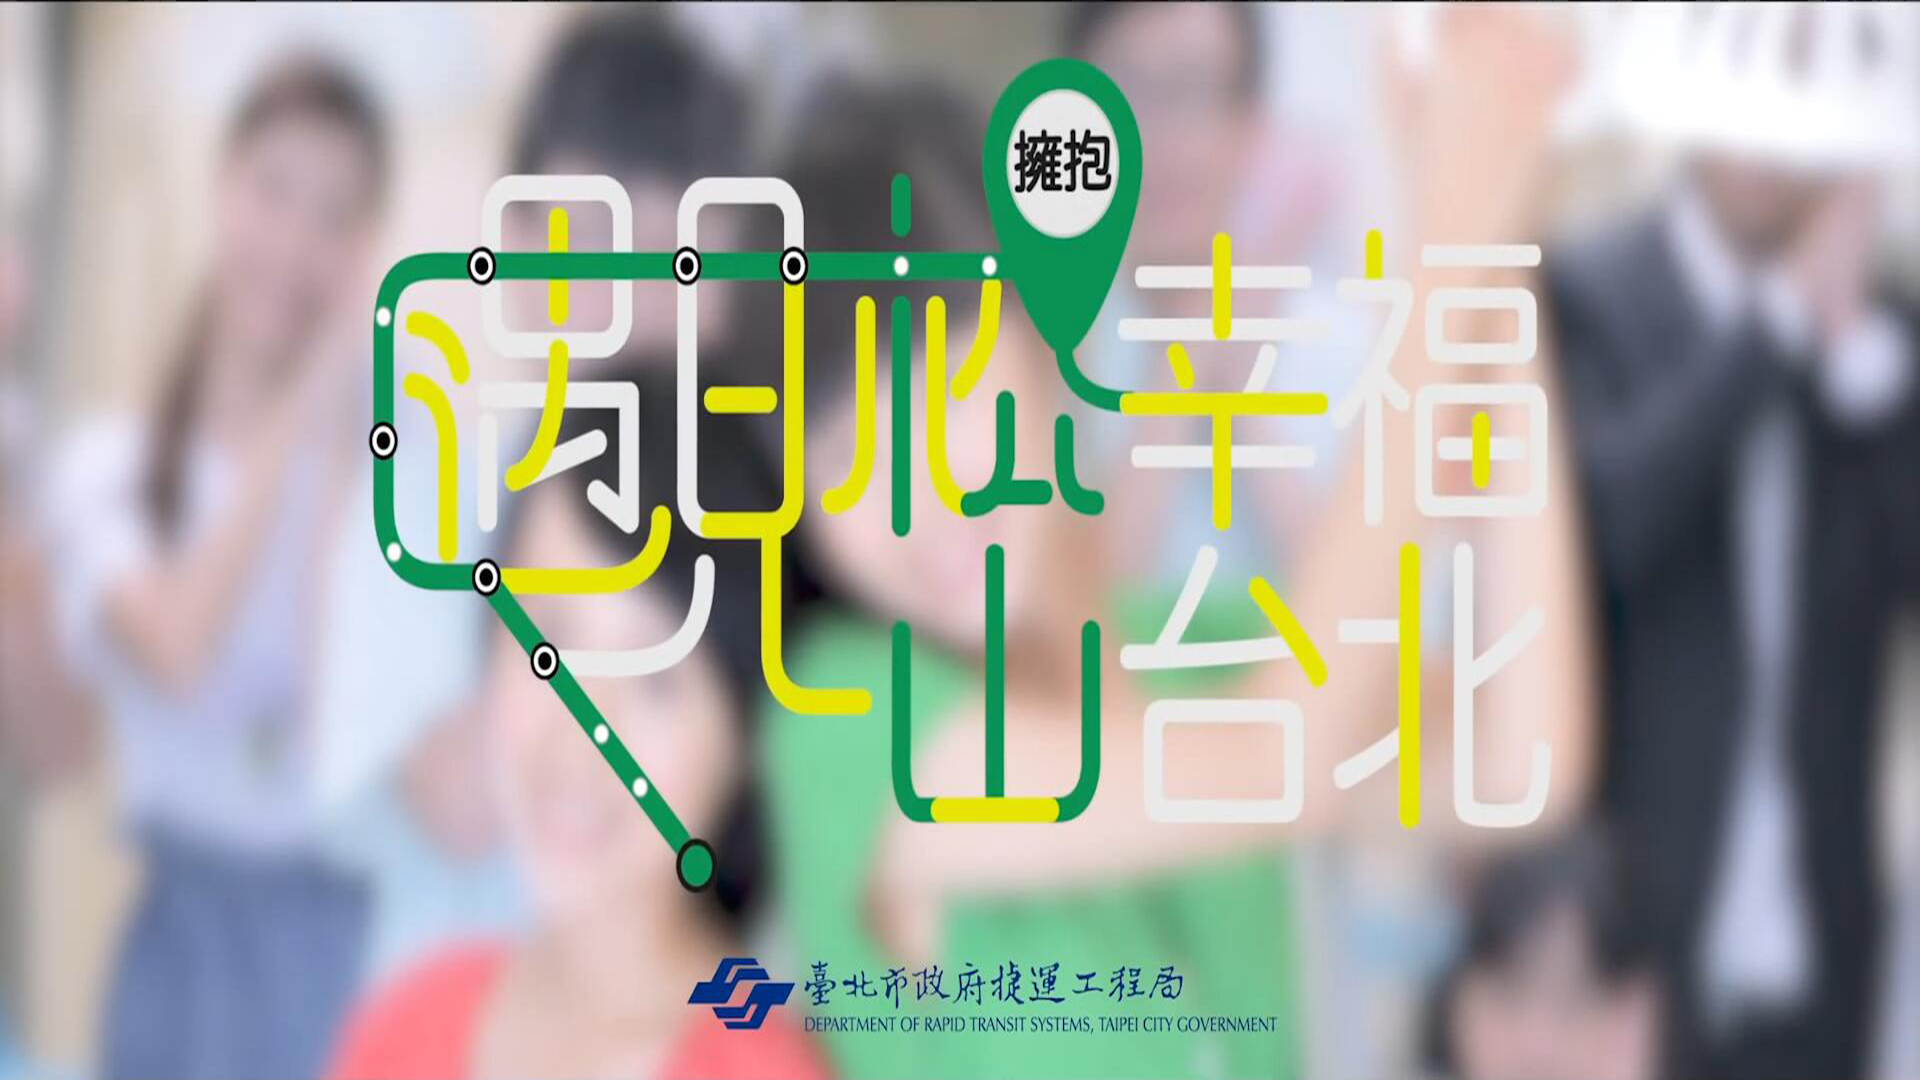 捷运松山线广告-遇见松山 拥抱幸福台北